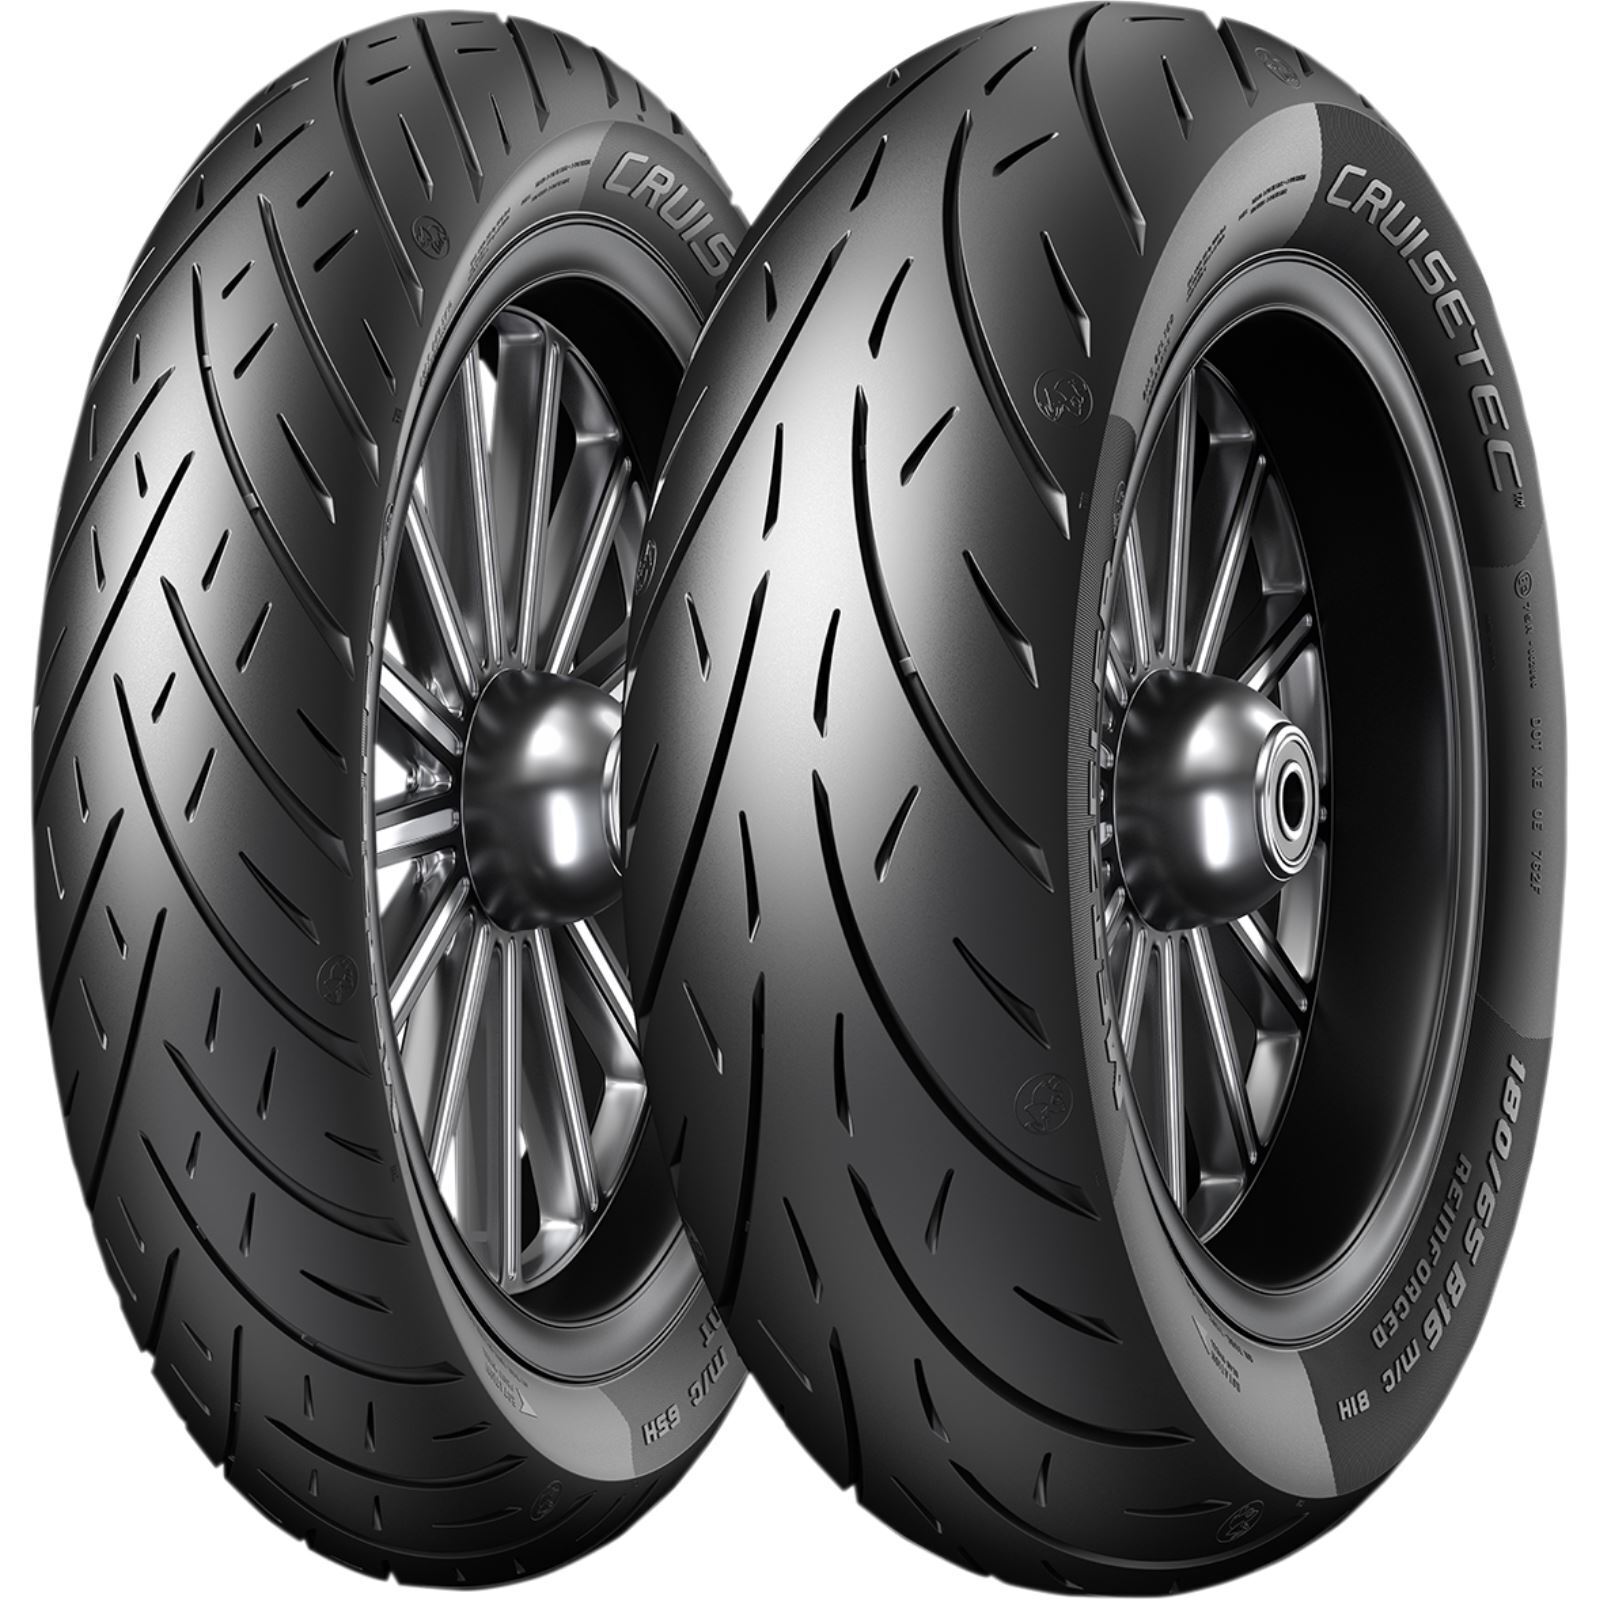 Metzeler Tire - Cruisetec™ - Front - 150/80R17 - 72V 4283100